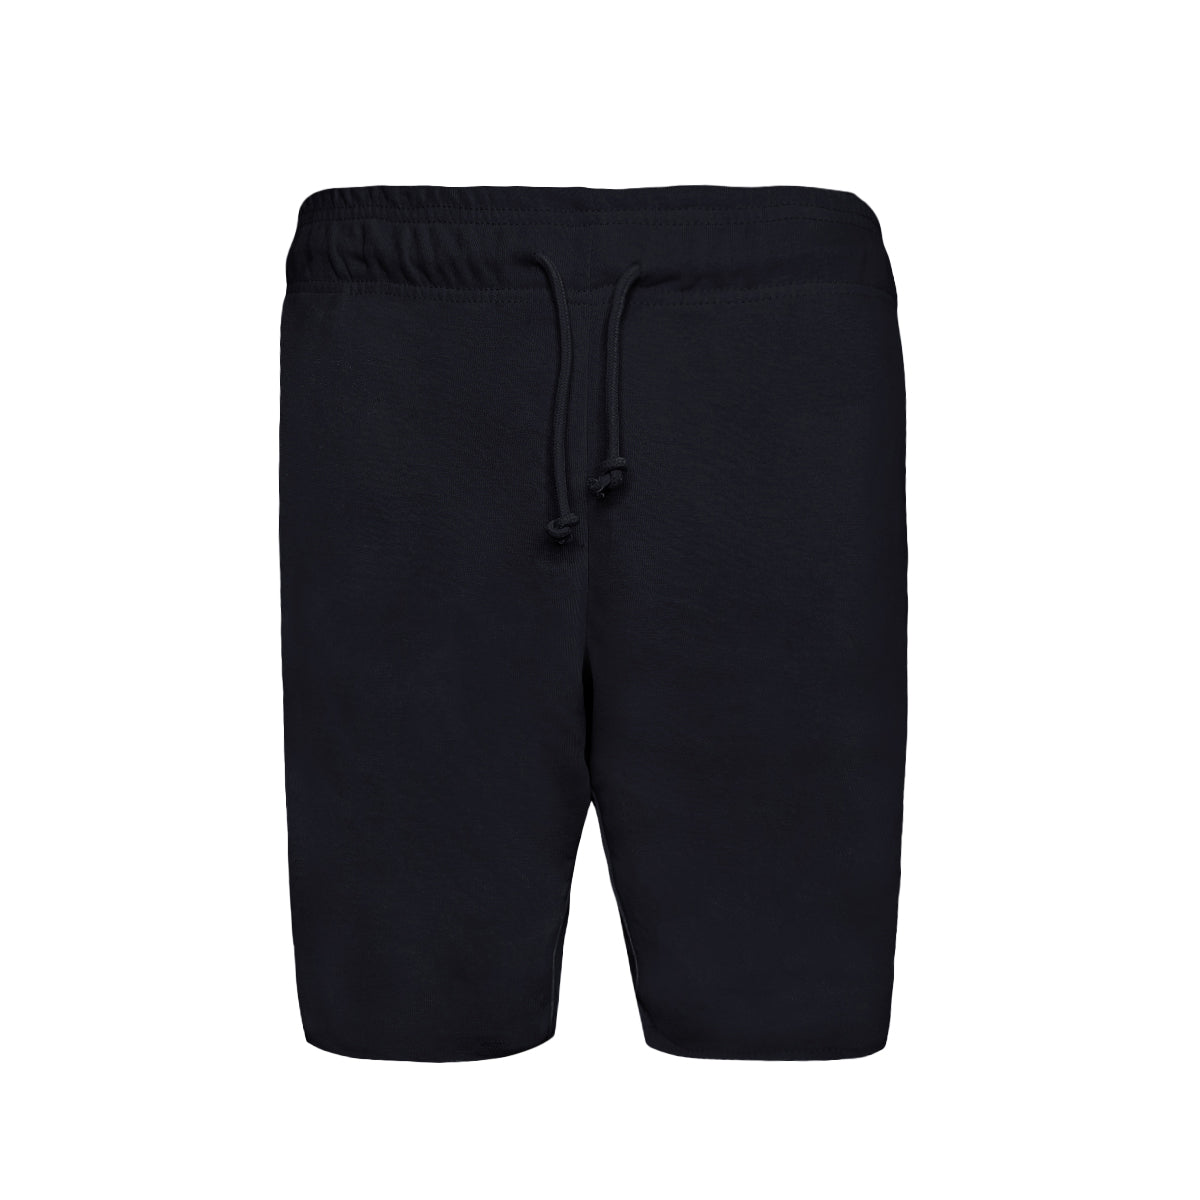 6030 - Adult Smart Shorts-Black Color - AF APPARELS(USA)